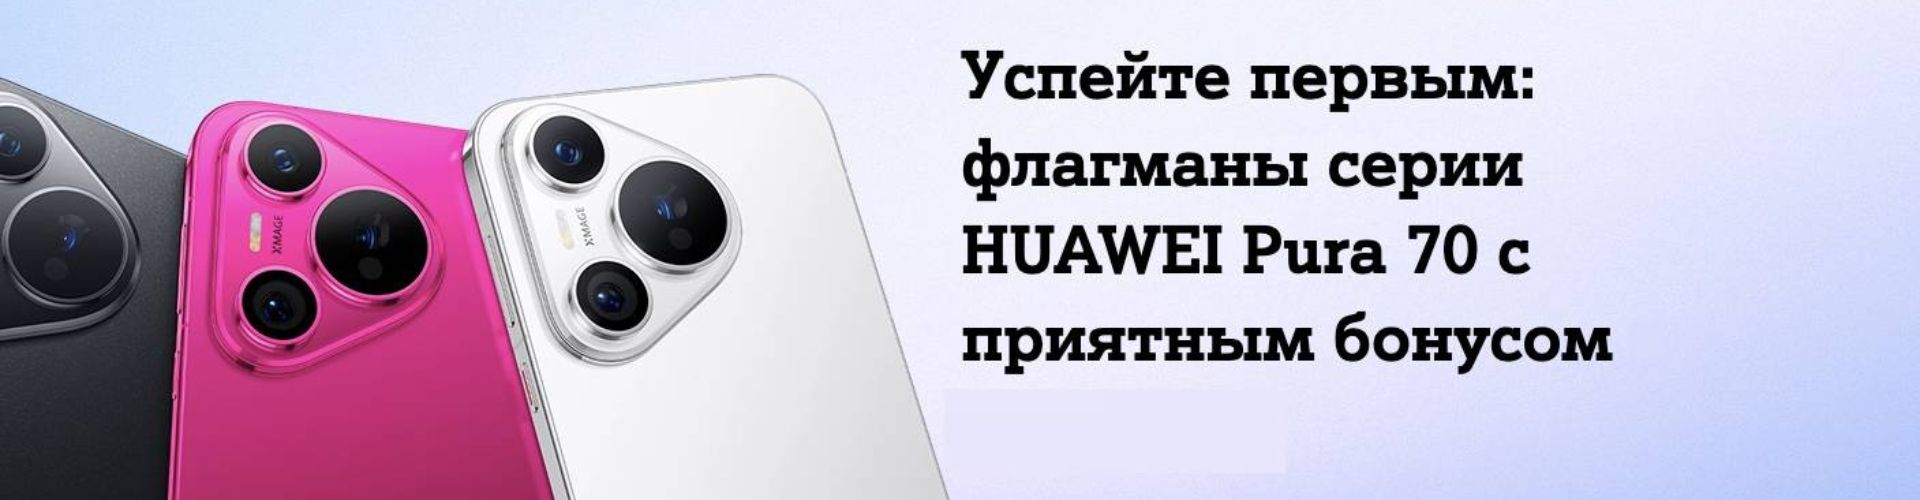 Huawei Pura 70 со скидкой до 300 рублей по промокоду от Мегатоп